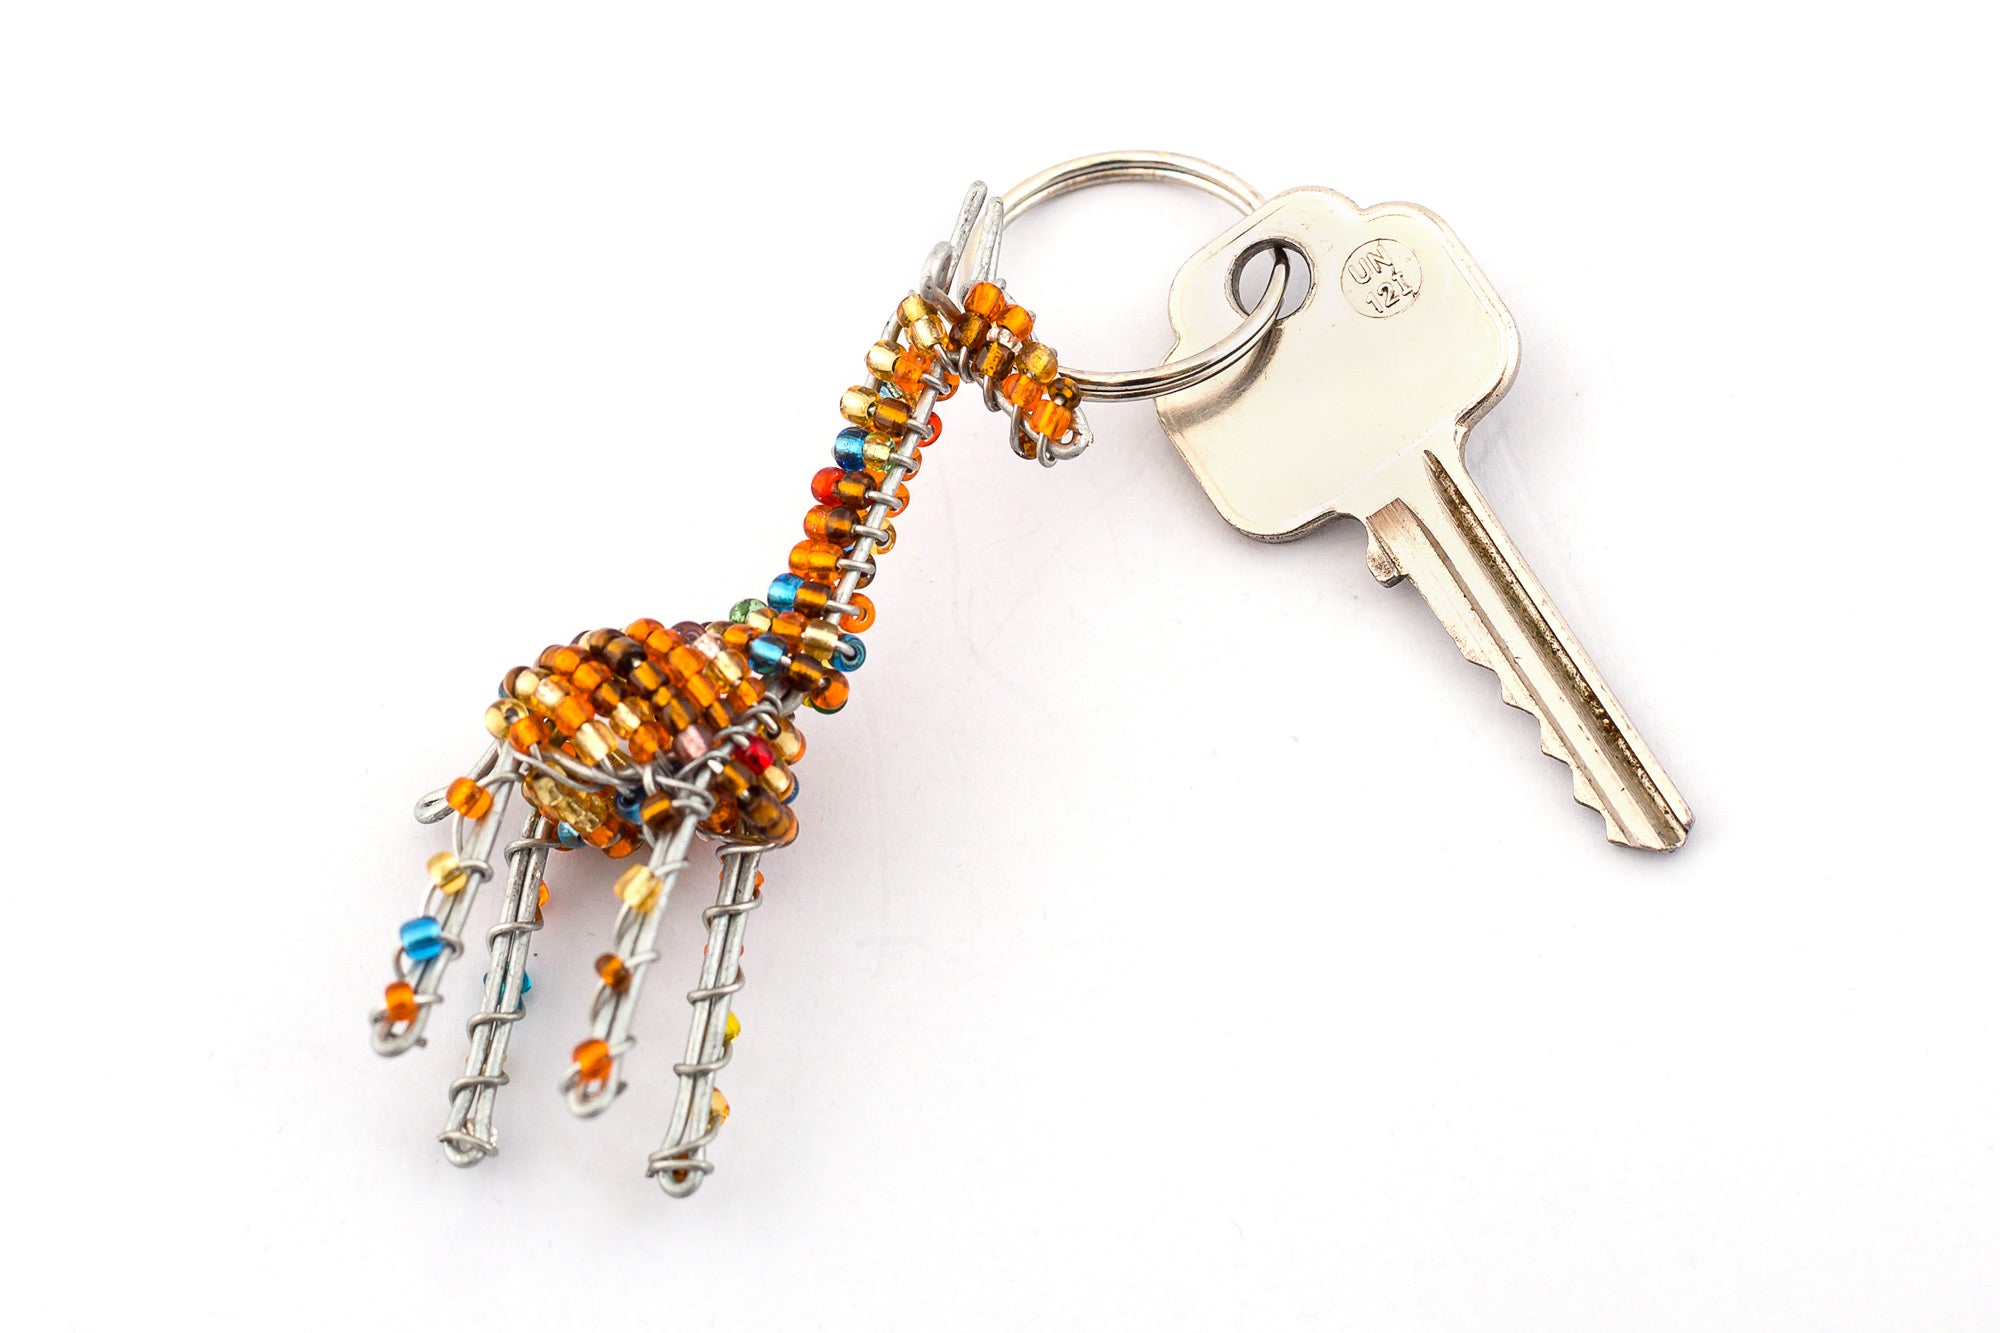 Beaded giraffe key chain. Handmade in golden beads with flicks of blue. 